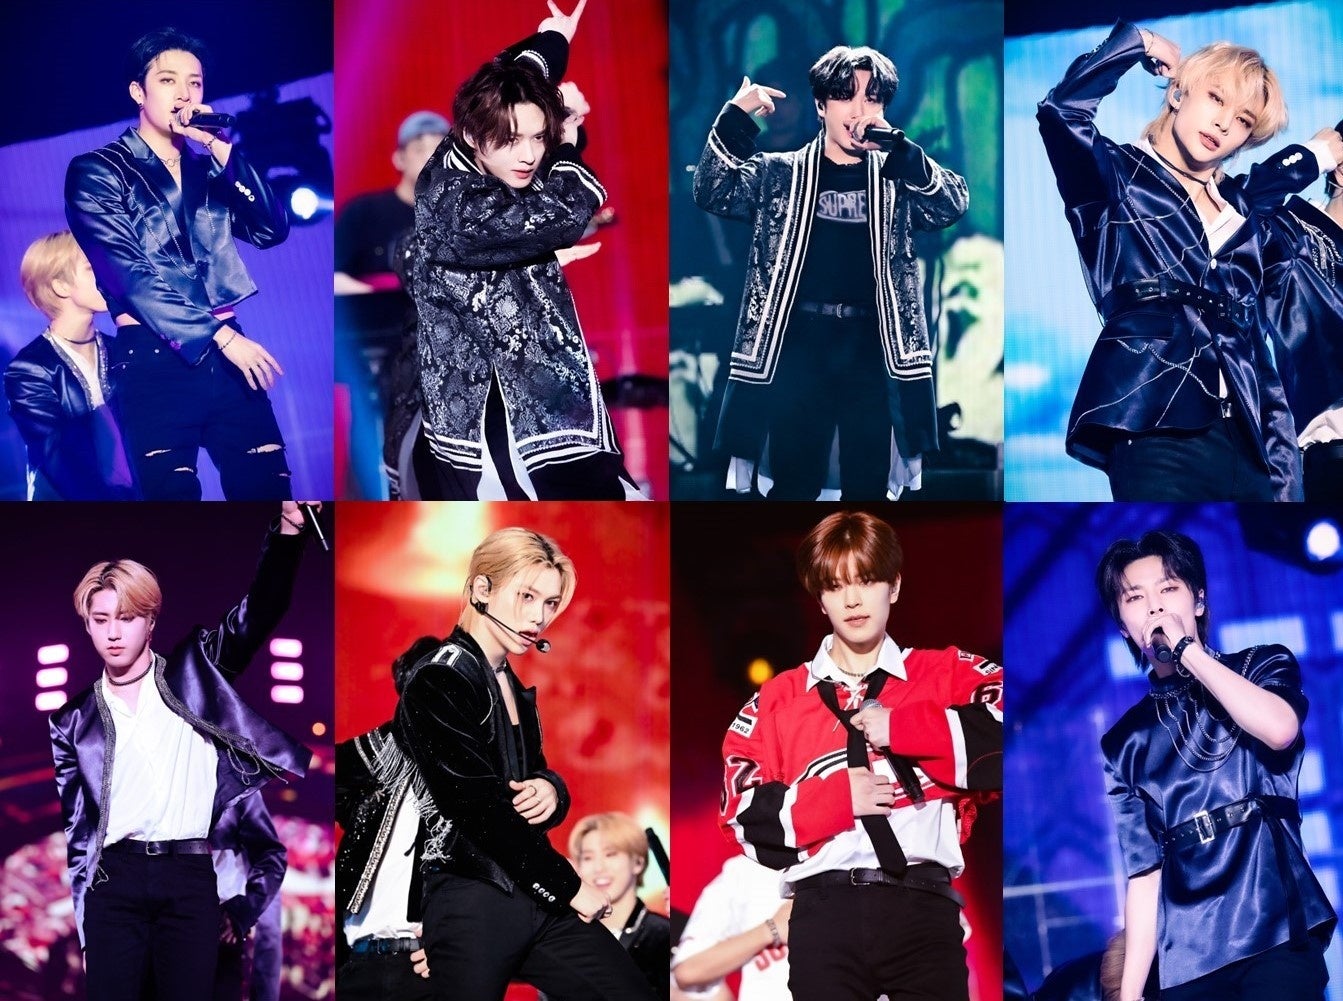 総勢26組のアイドルグループたちが作り上げるアイドルライブ「TIGET FES CONNECT Vol.3 -POP-UP-」が横浜ランドマークホールにて開催